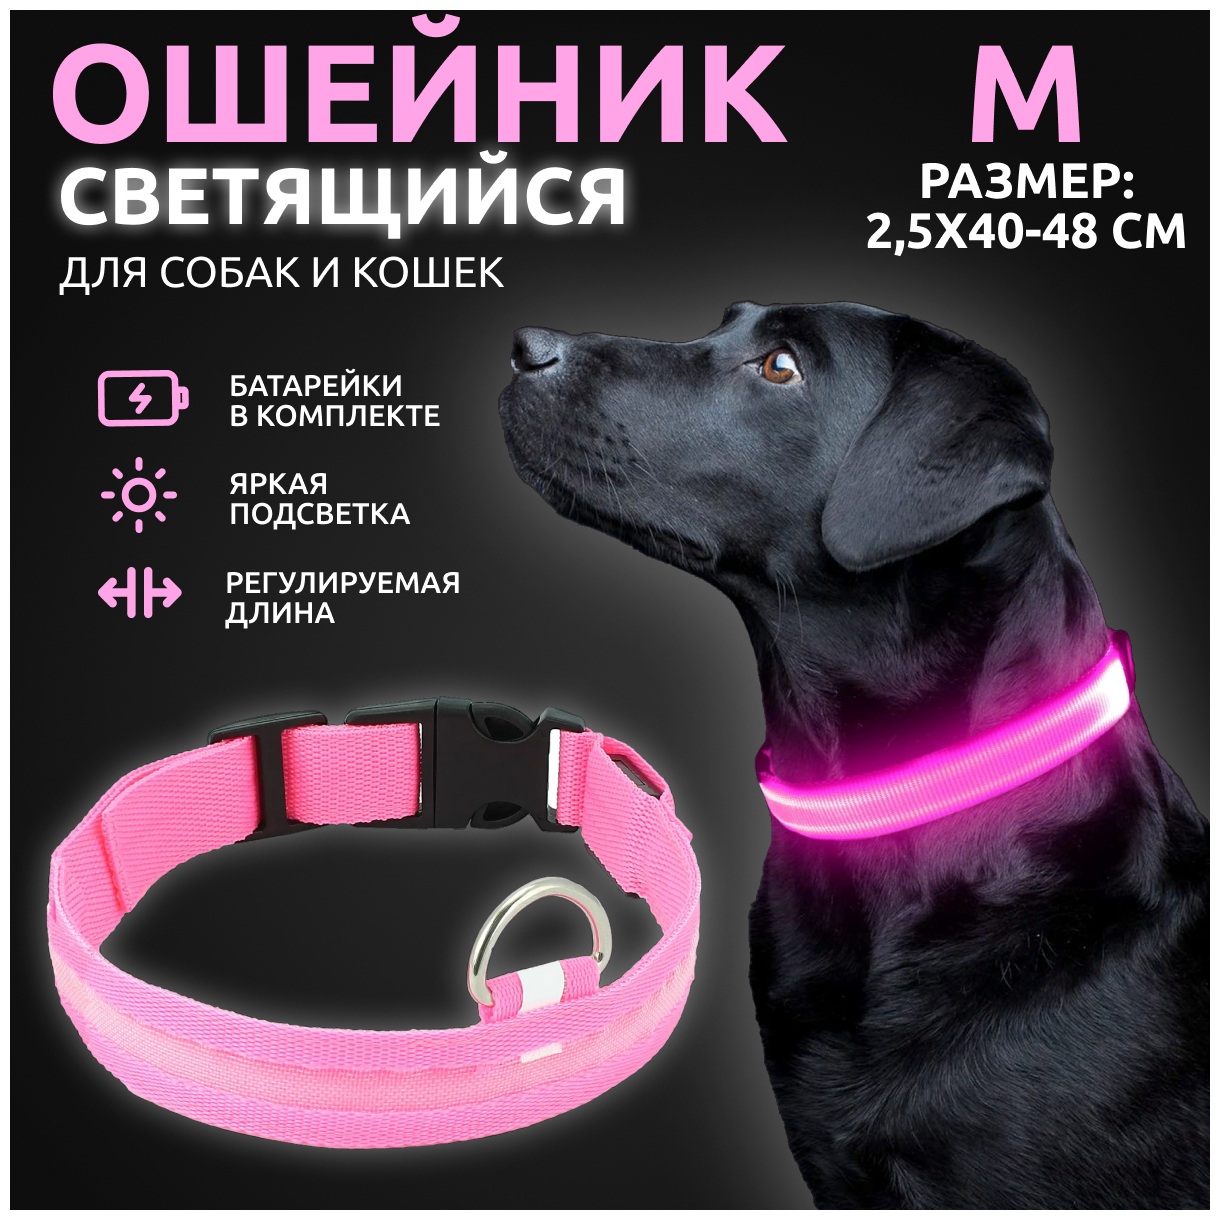 Ошейник светящийся для собак и кошек светодиодный нейлоновый розового цвета, размер M - 2,5х40-48 см